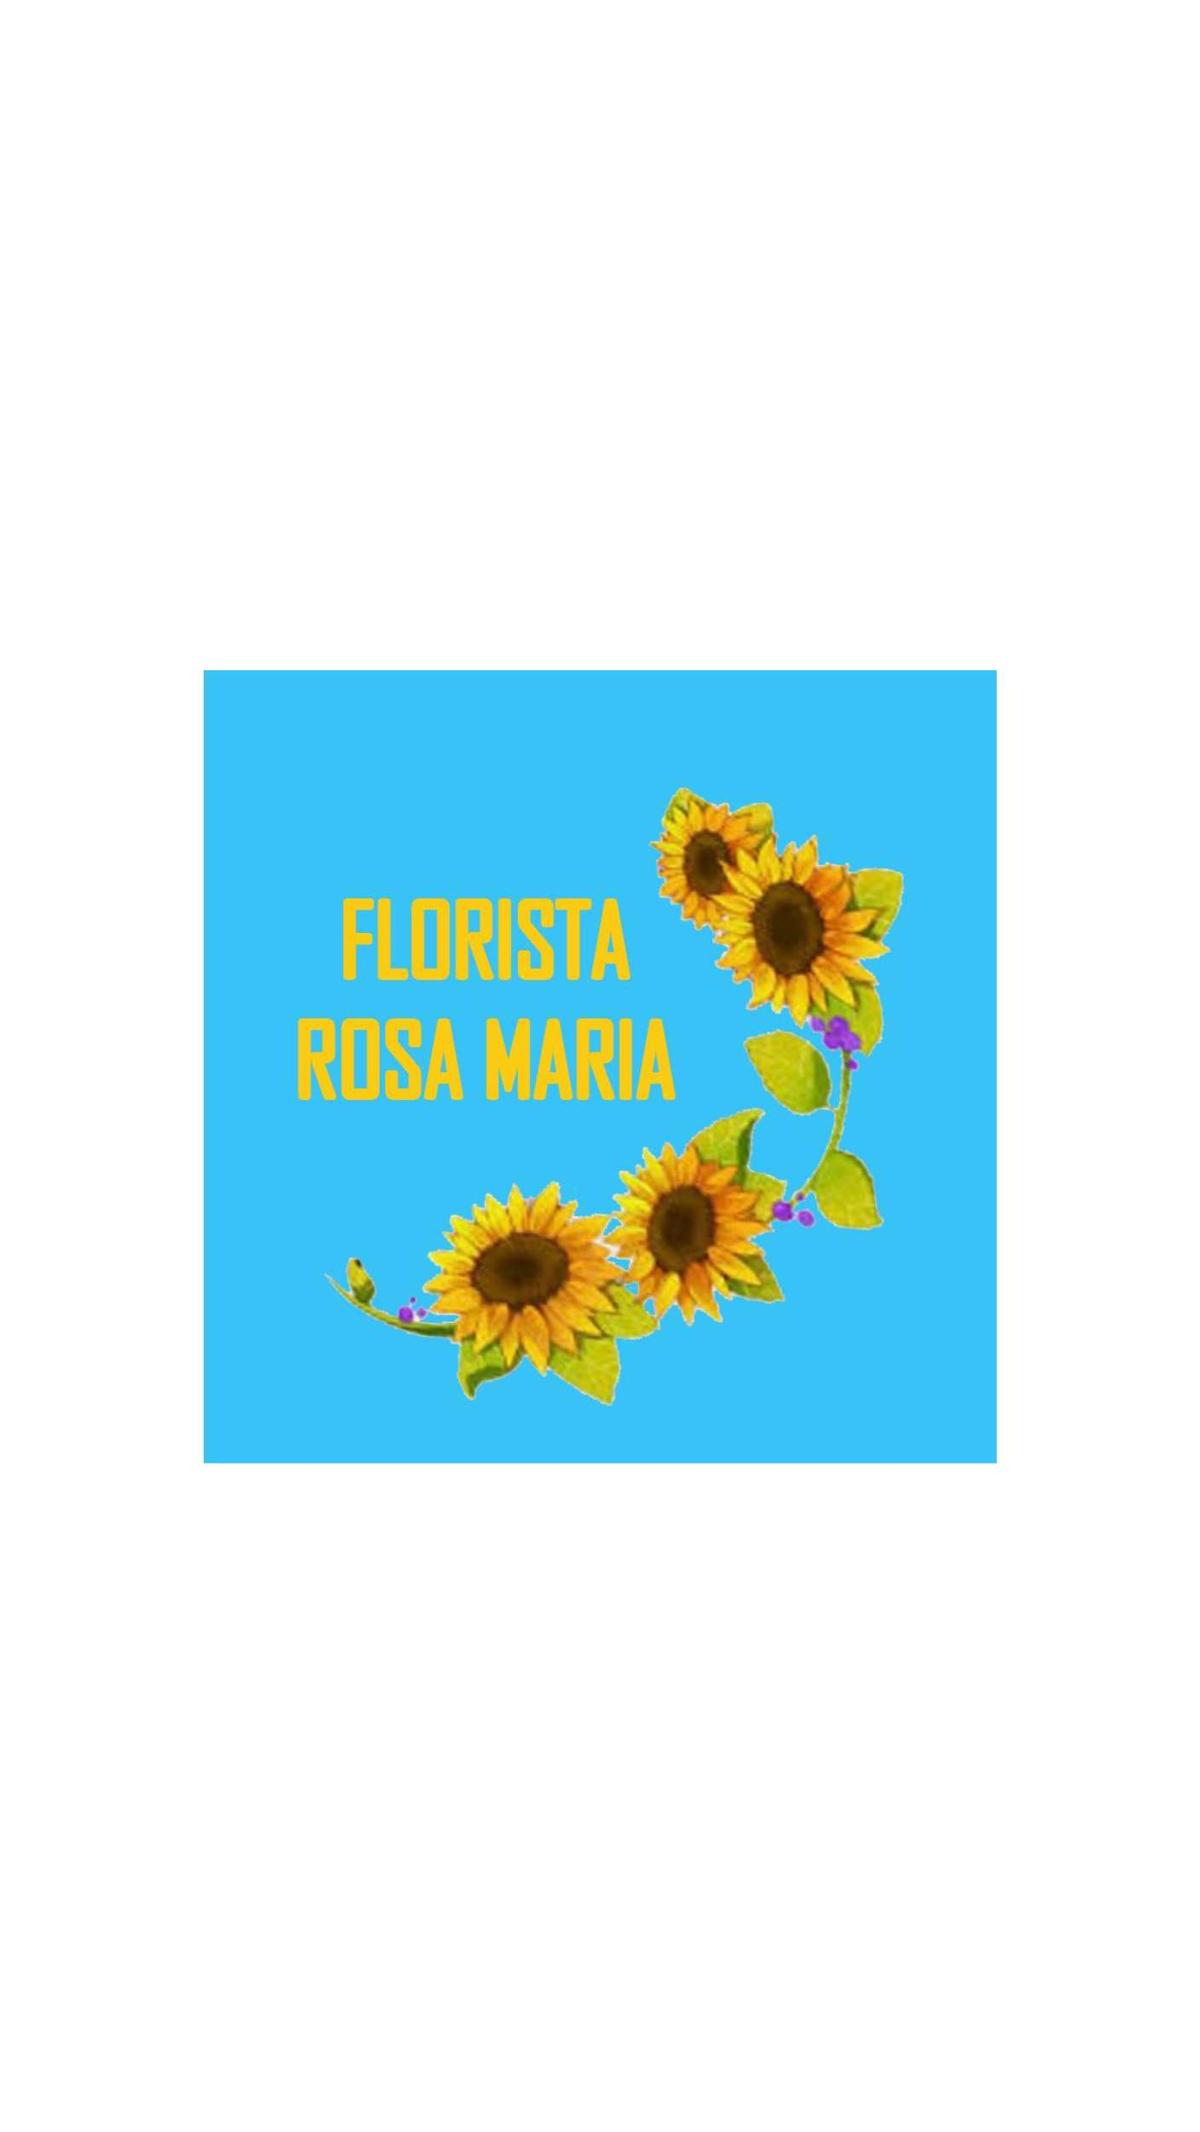 Florista Rosa Maria